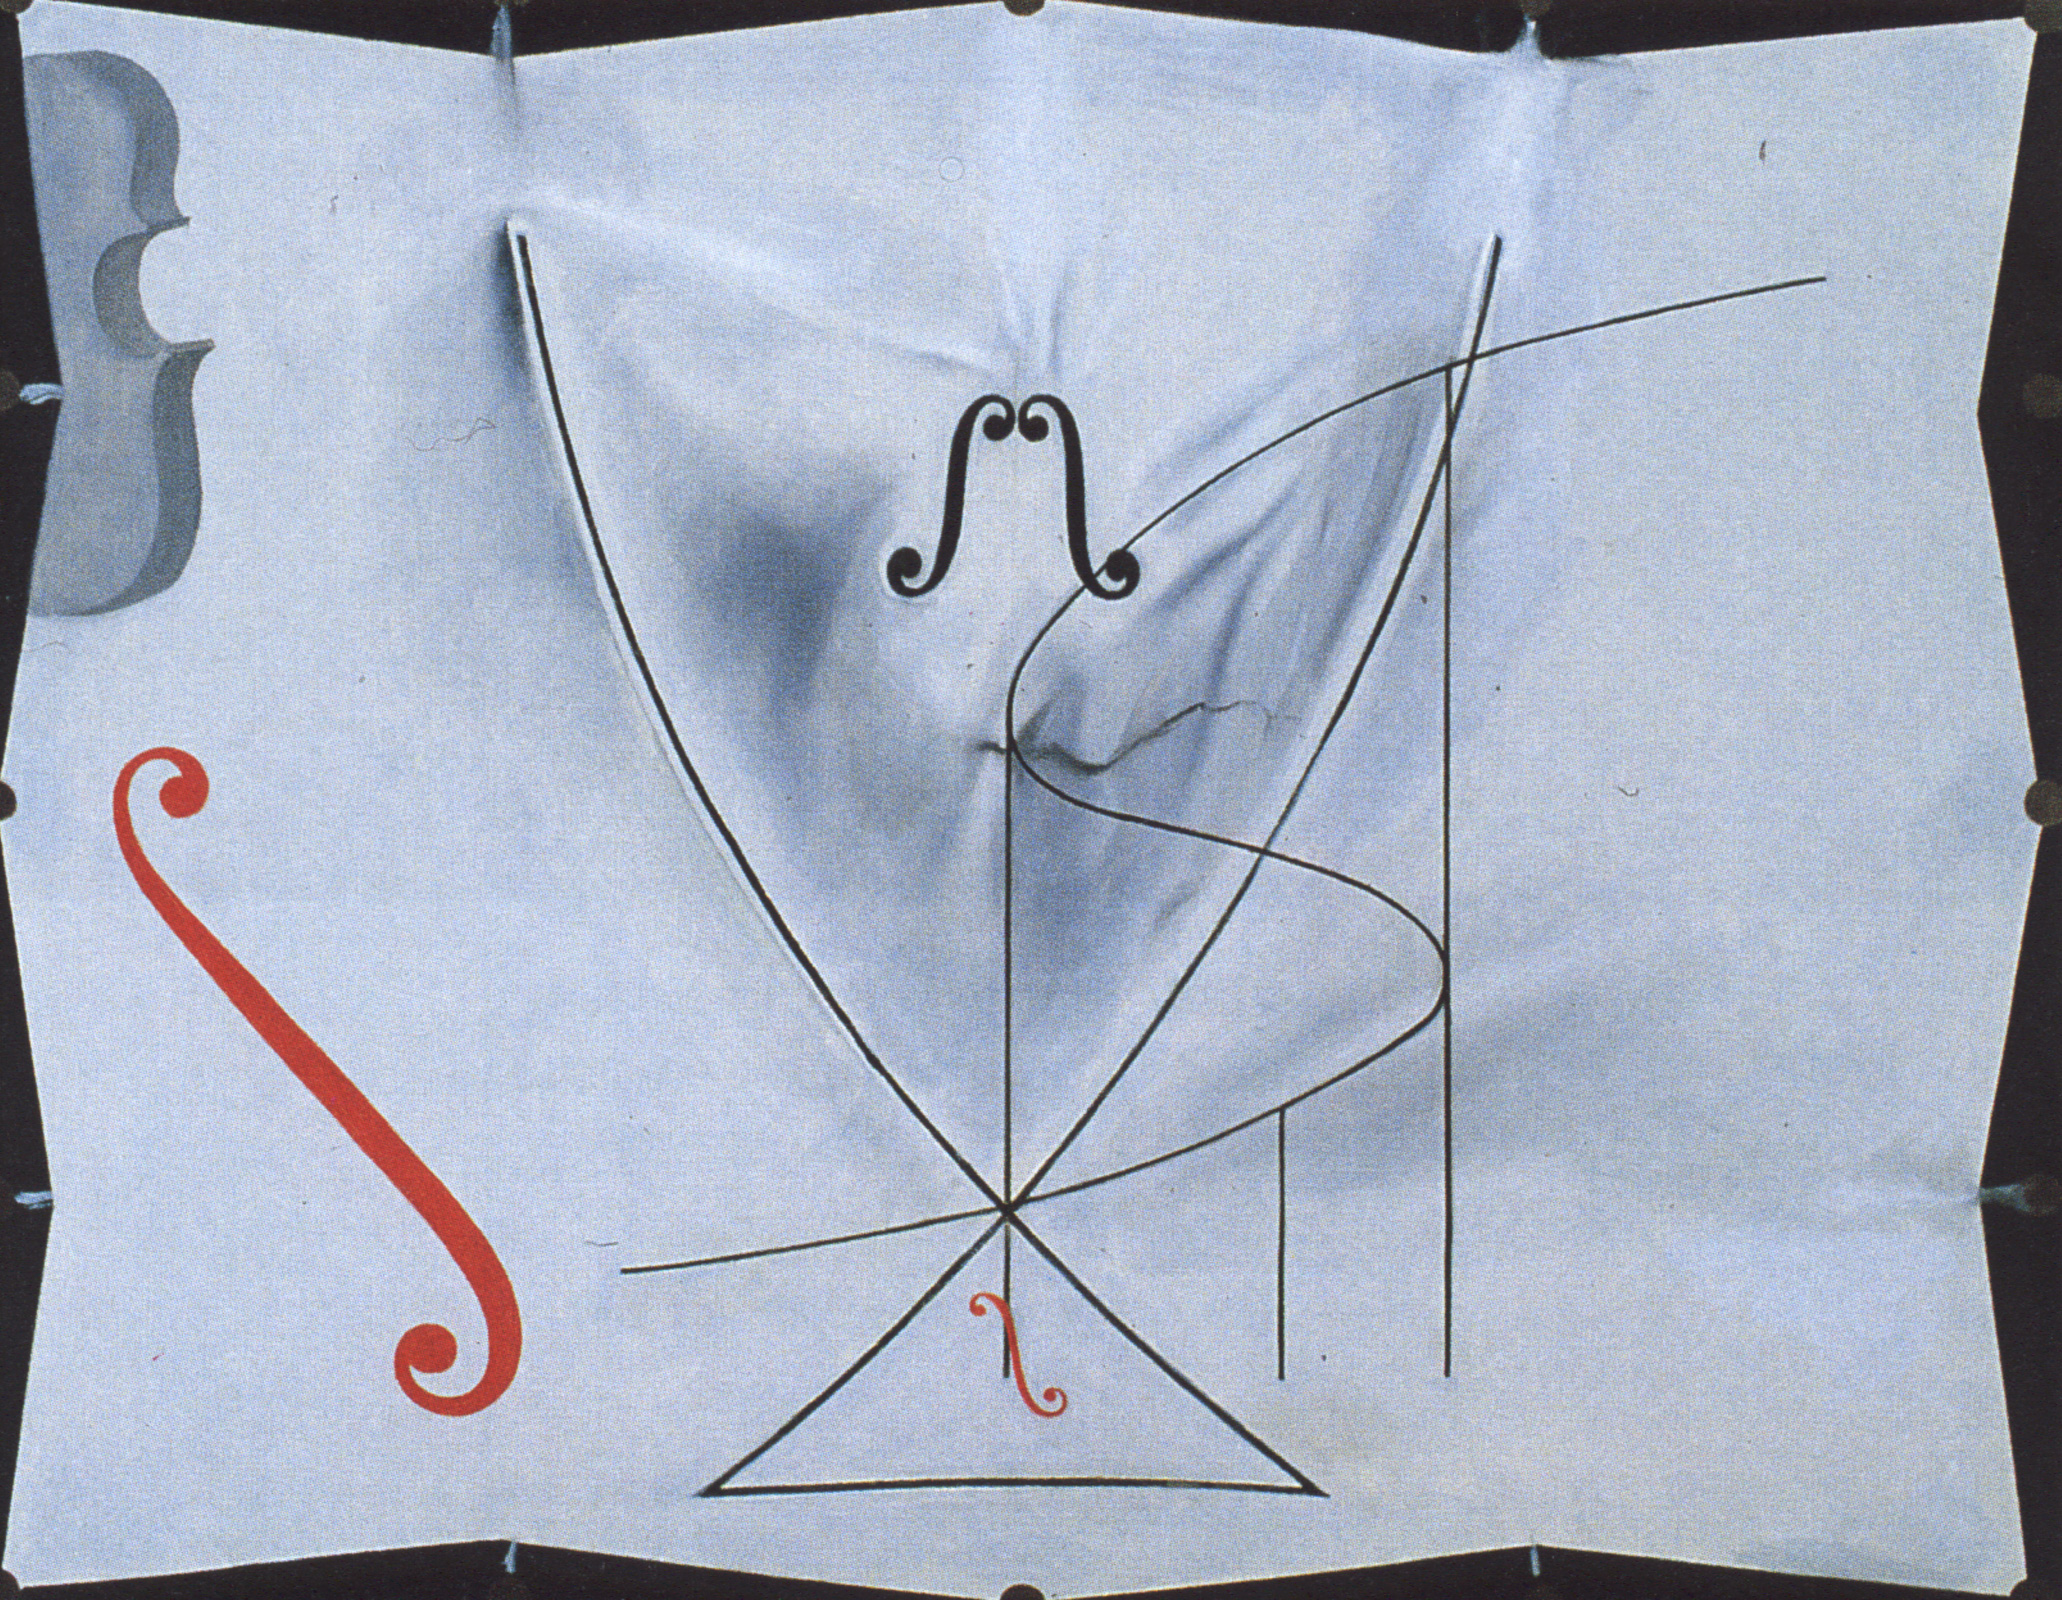 La coda di rondine  by Salvador Dalì - 1983 - 73 x 92,2 cm  